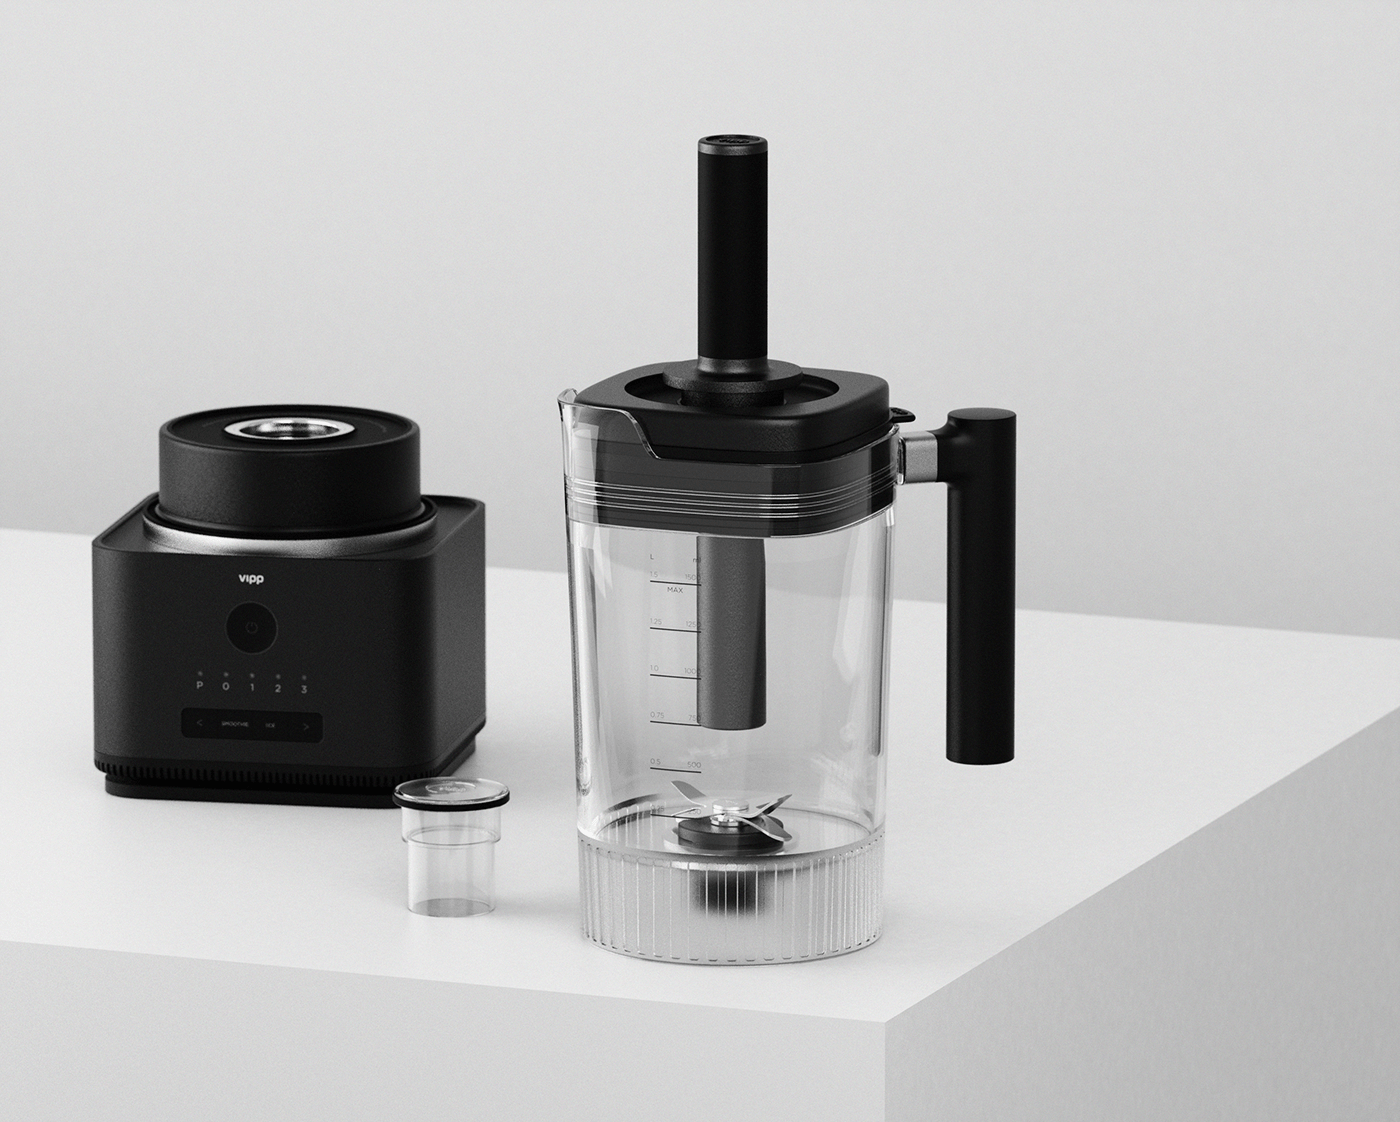 3D blender home appliance industrial design  kitchen modeling product